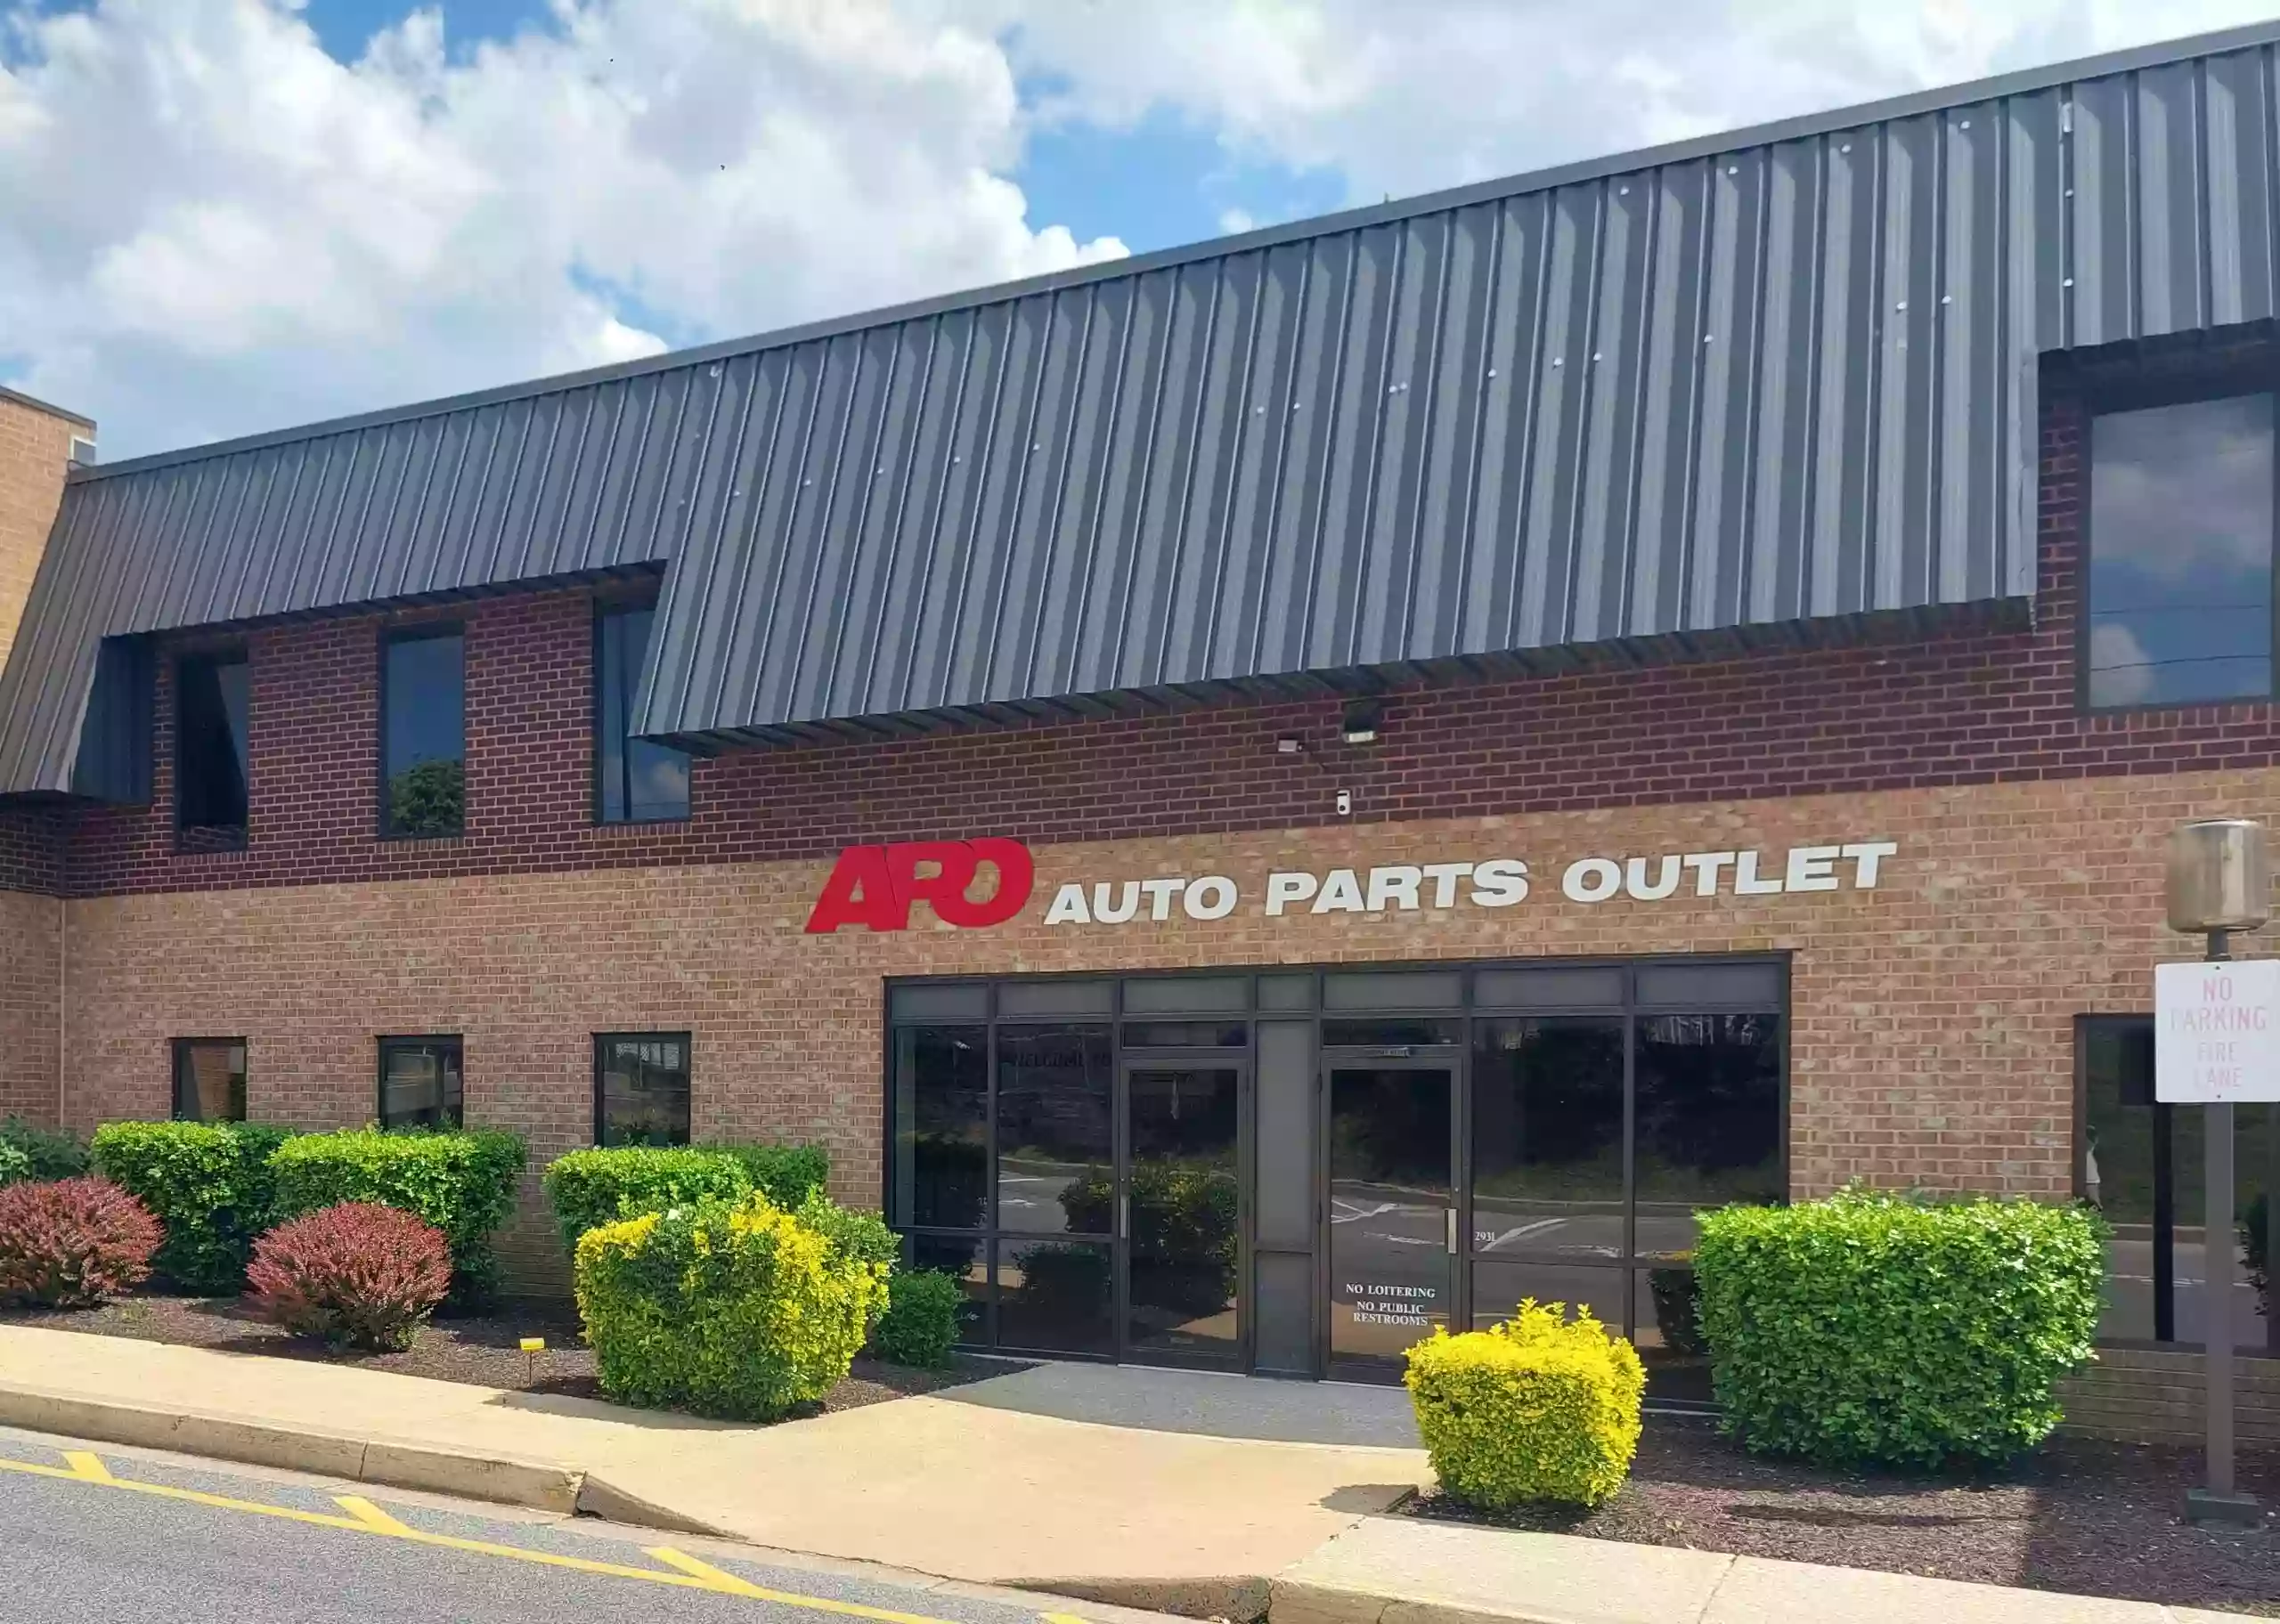 Auto Parts Outlet - West Hartford